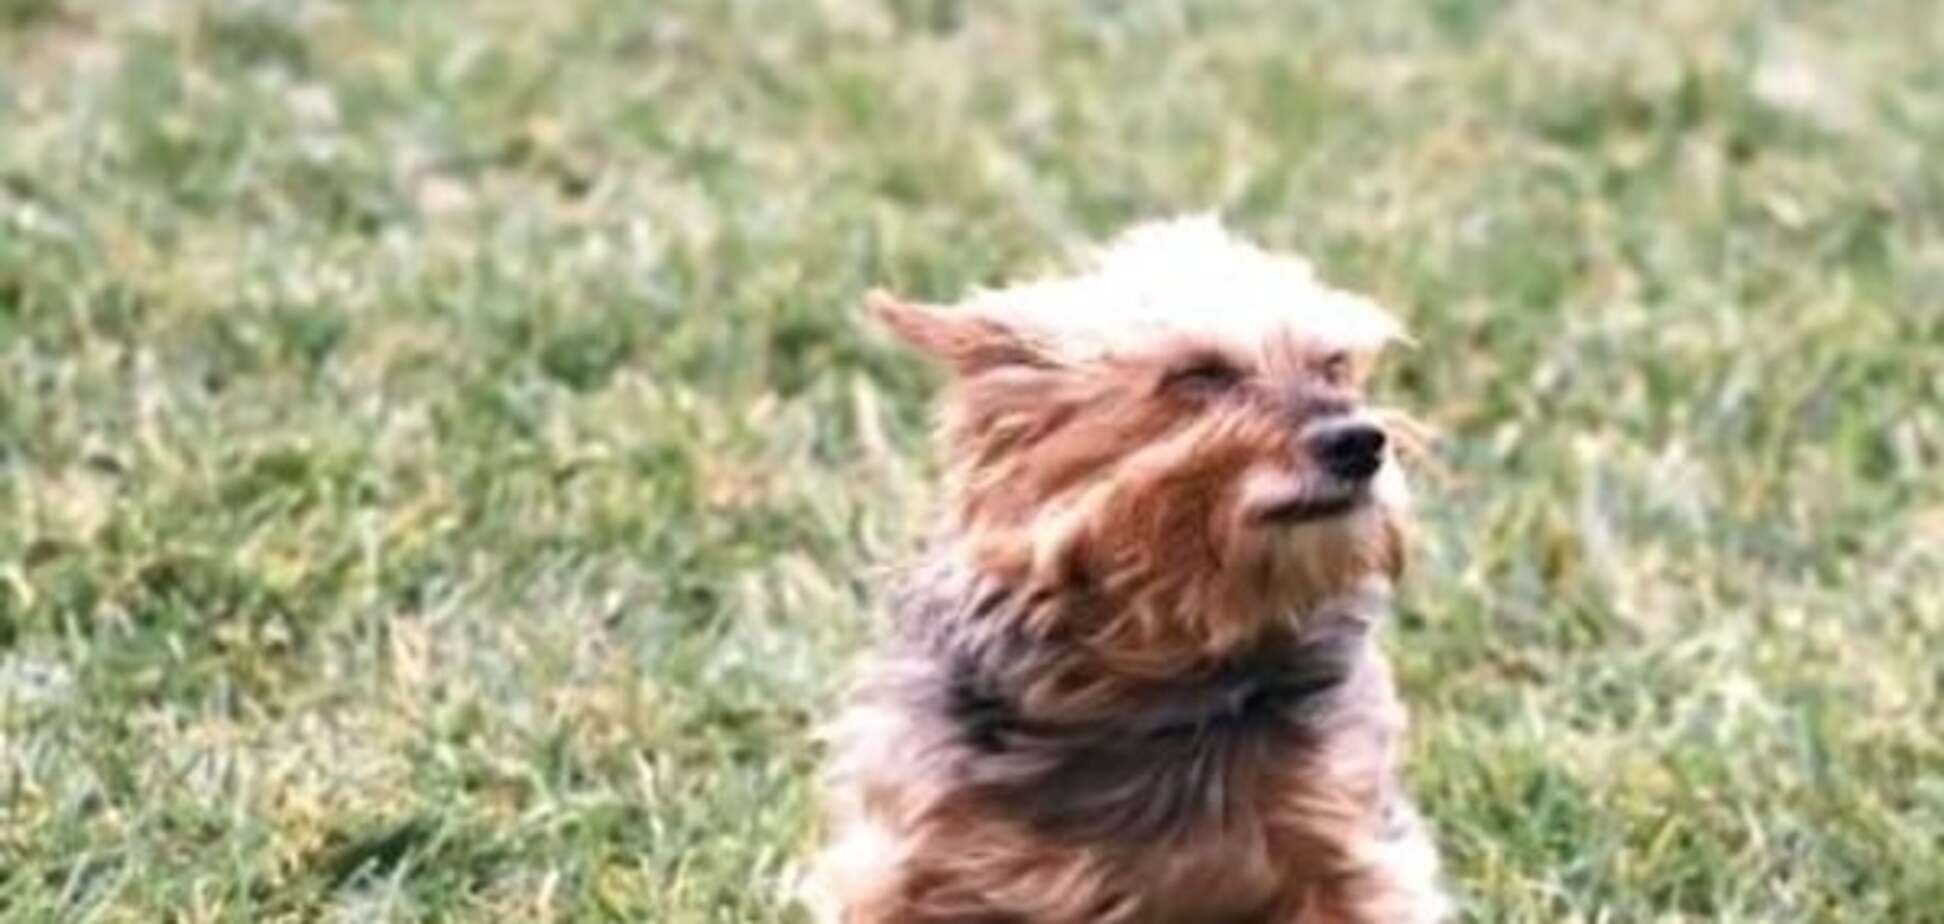 Унесенные ветром: в сети показали, как псов 'сдувают' машиной для уборки листьев